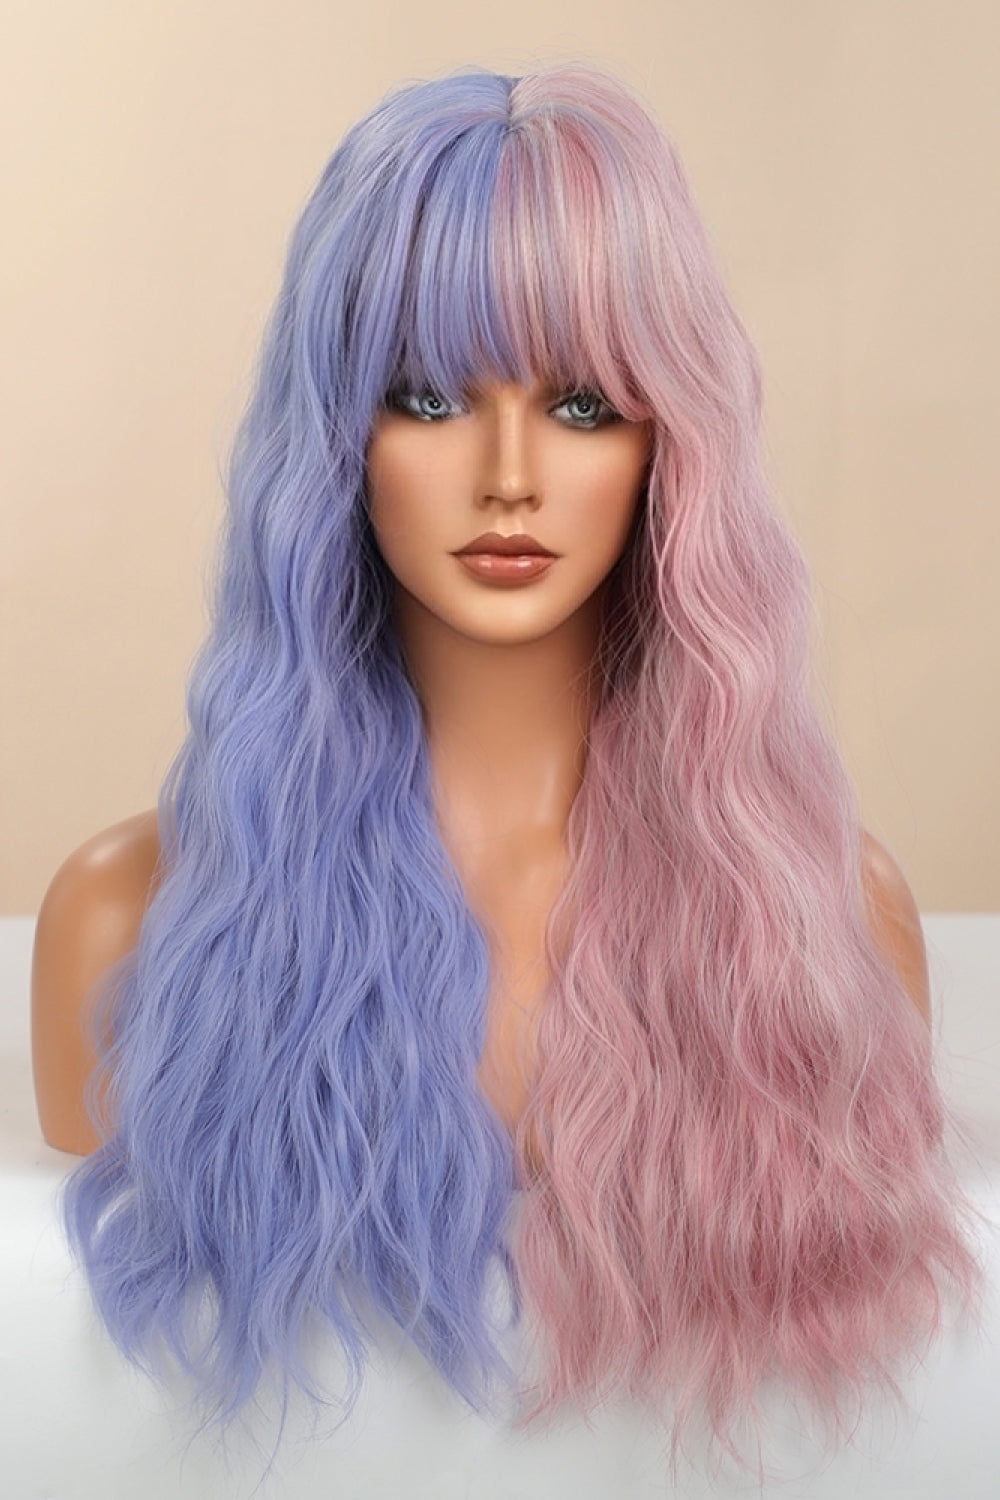 13*1" Full-Machine Wigs Synthetic Long Wave 26" in Blue/Pink Split Dye-Ever Joy